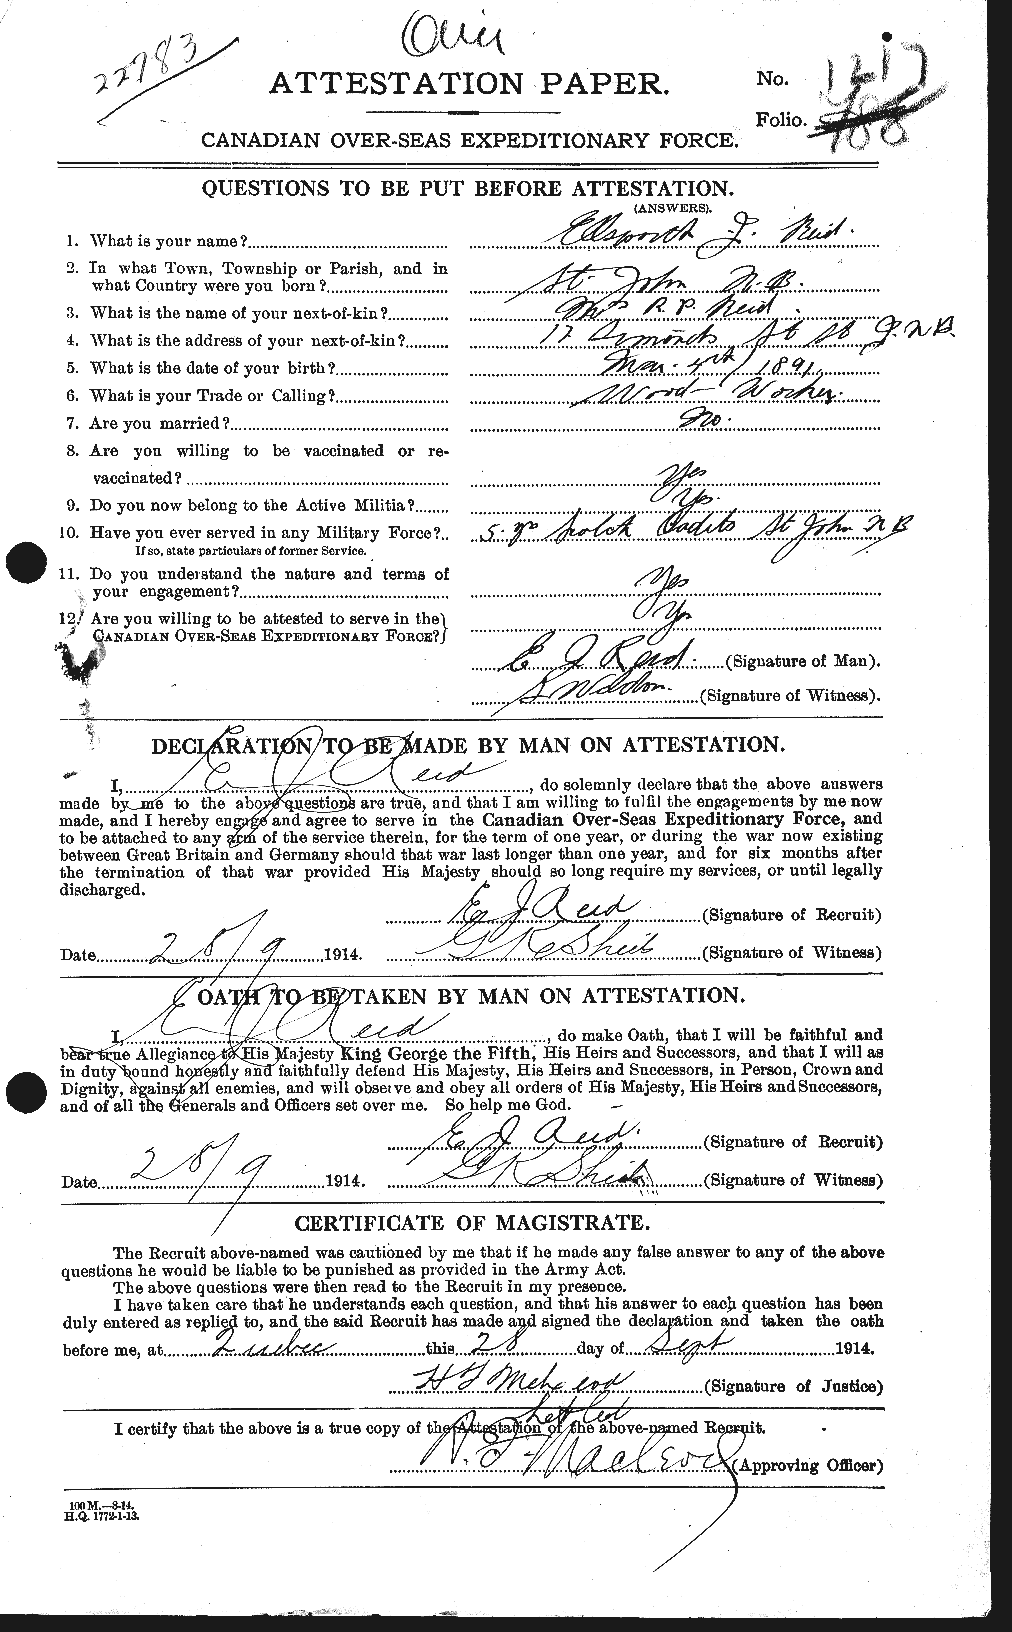 Dossiers du Personnel de la Première Guerre mondiale - CEC 598000a